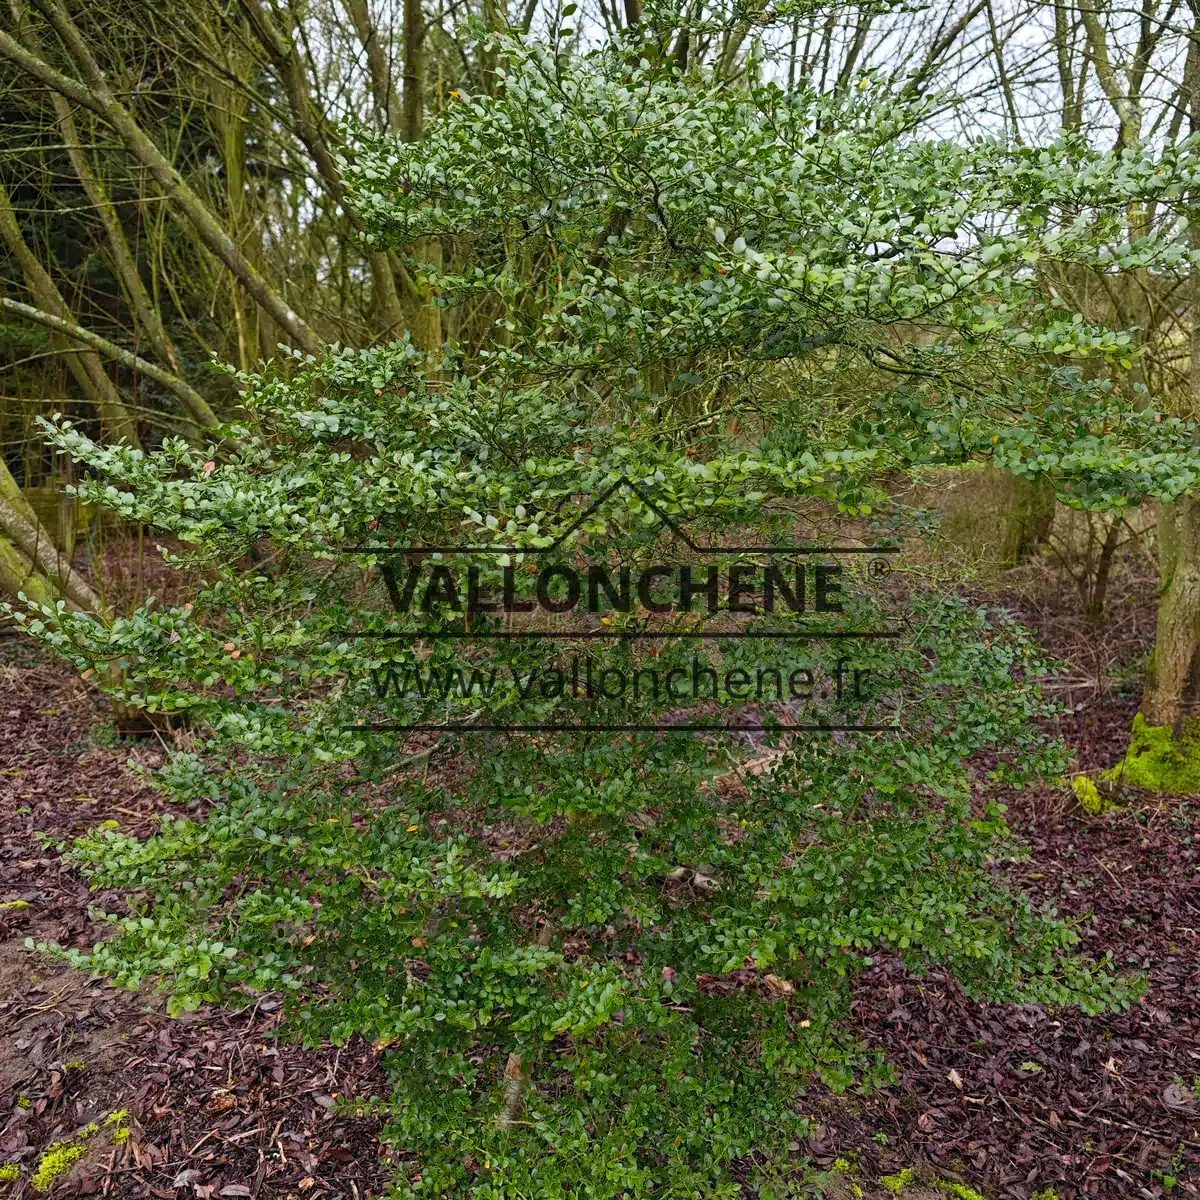 Un exemplaire de 1,80 m et d'une douzaine d'années du NOTHOFAGUS betuloides dans le Jardin de Vallonchêne